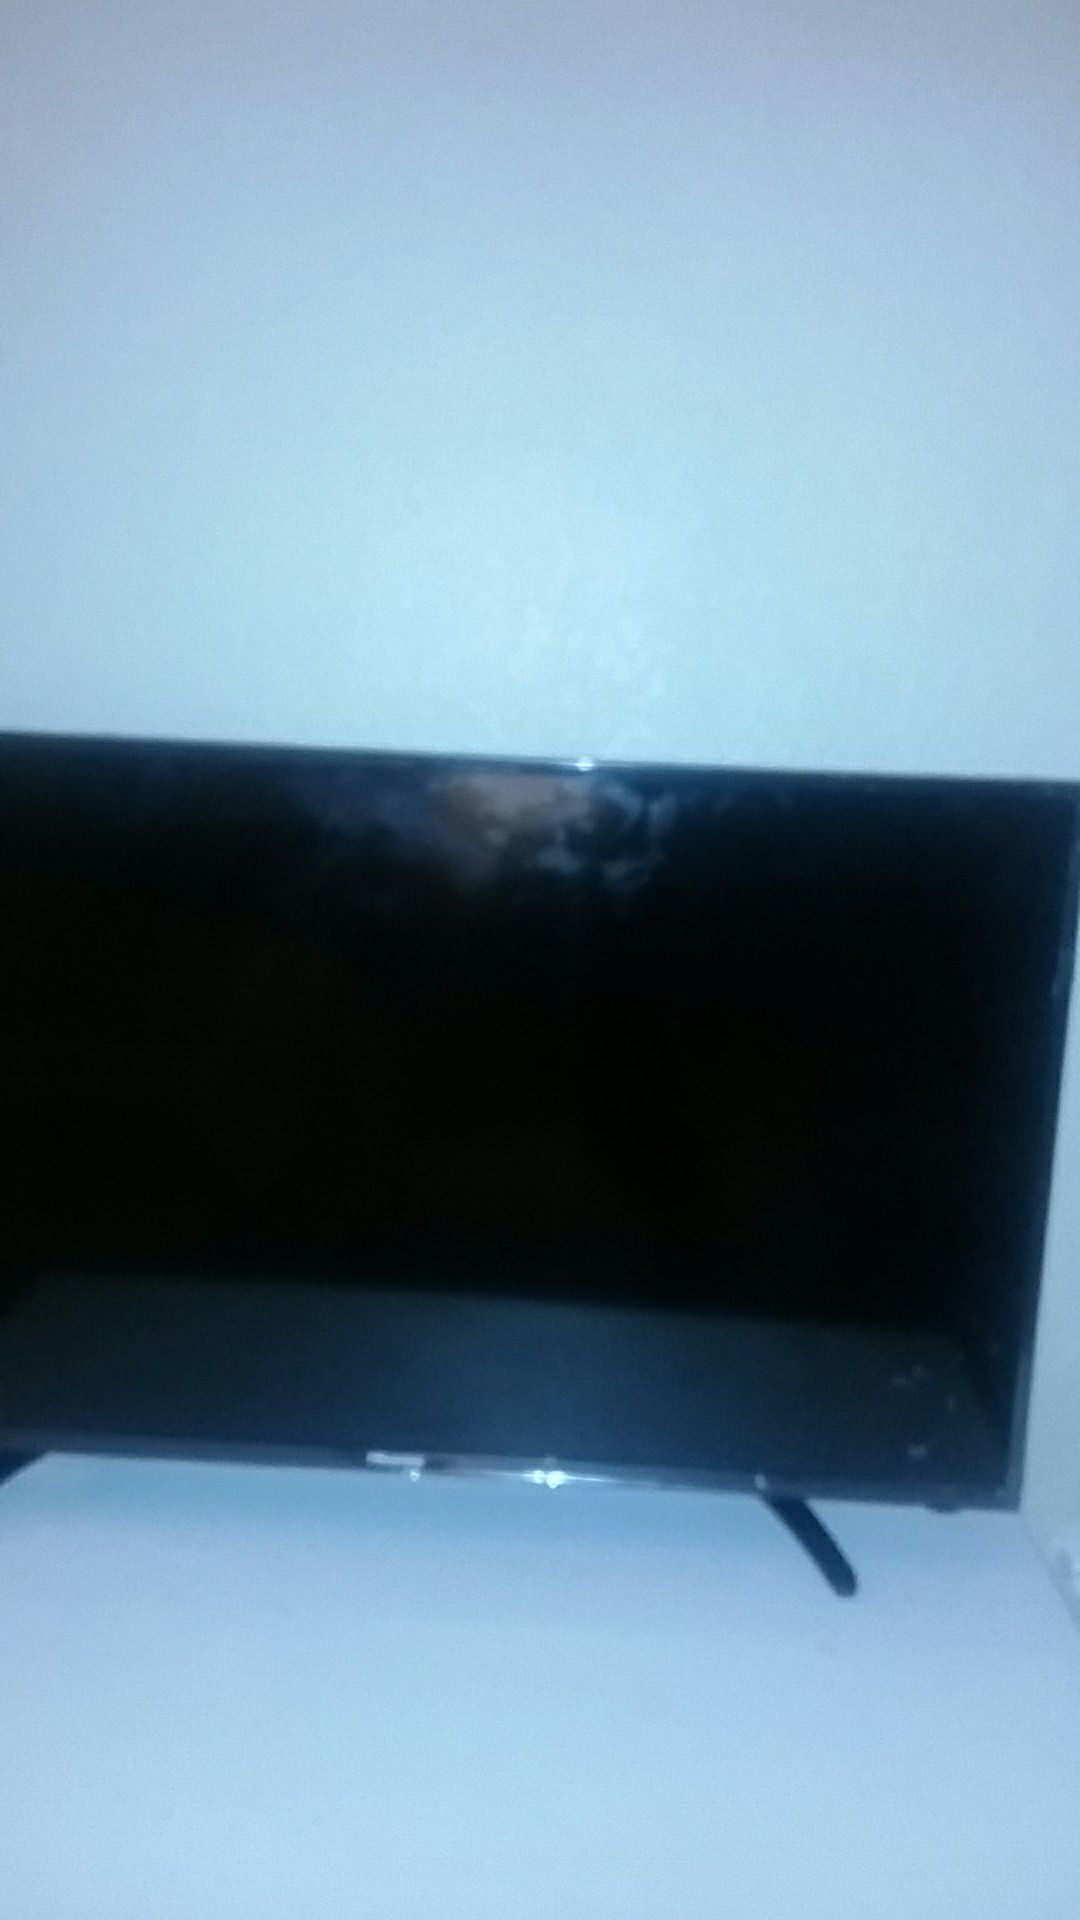 Hisense Flat Screen TV